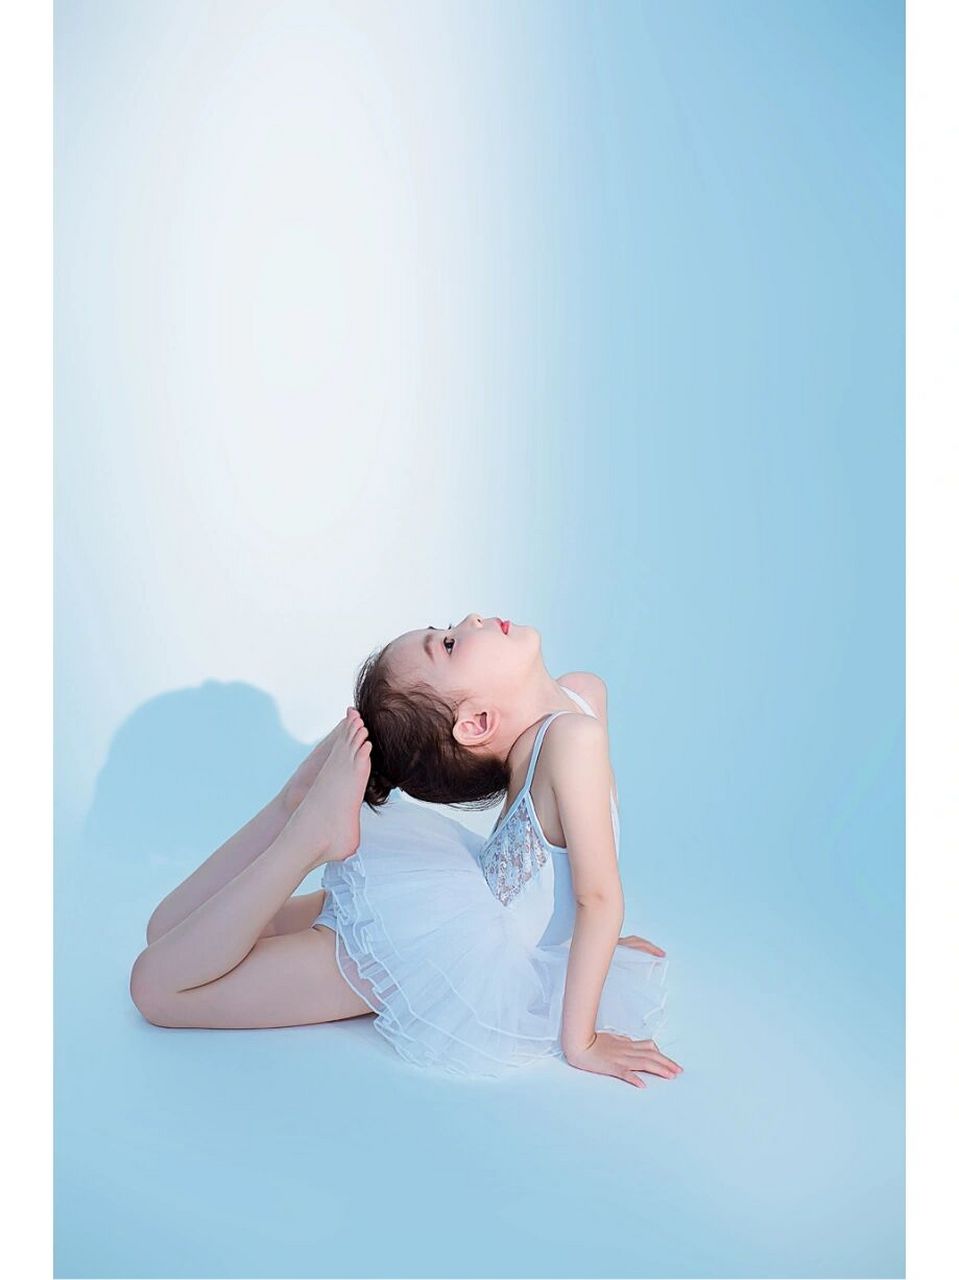 芭蕾舞02写真 学习舞蹈的小女孩95 像一个轻盈飞舞的精灵,优雅